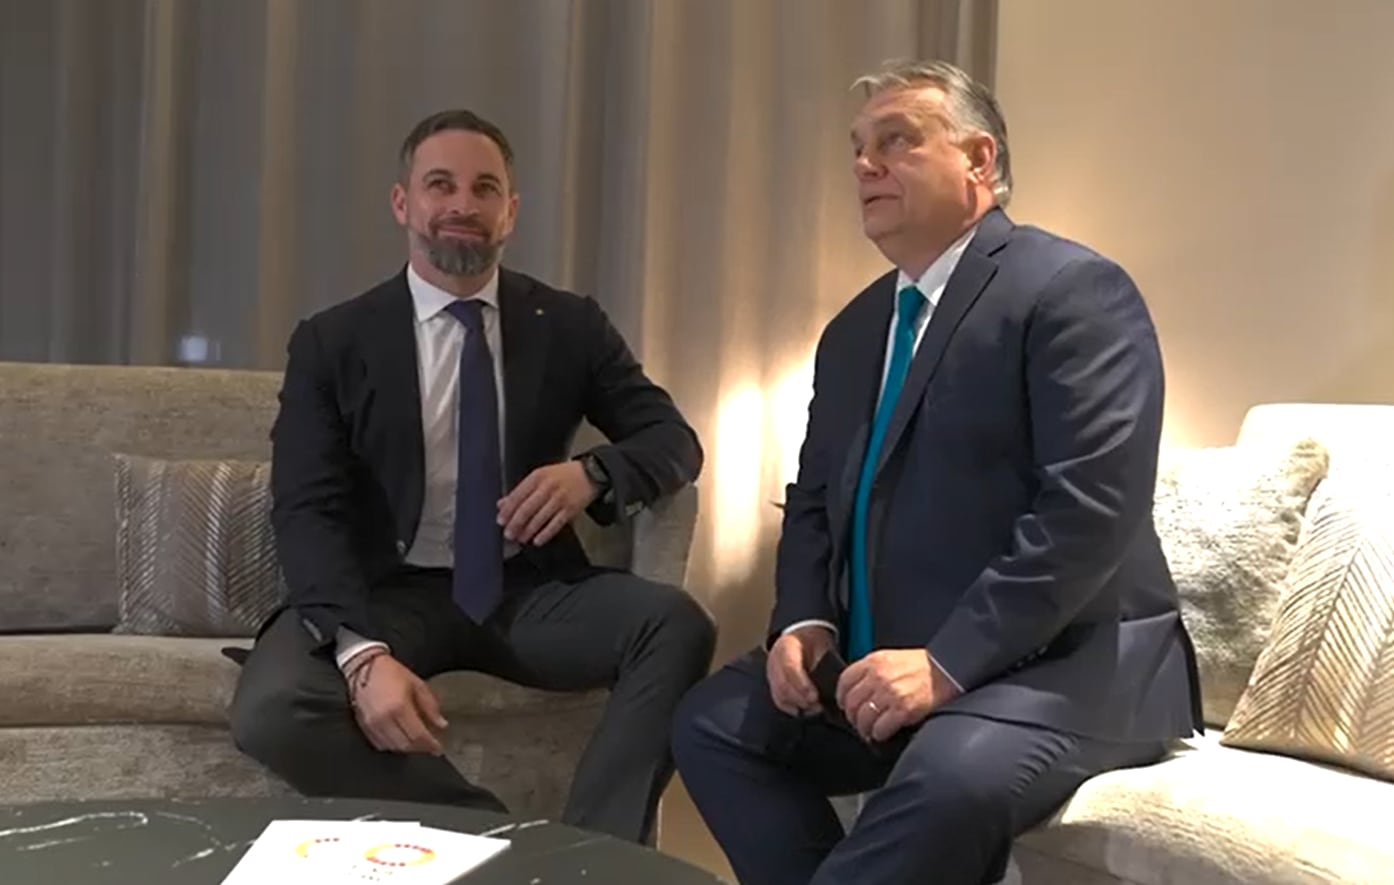 La conexión húngara de Vox: Orbán elige España como puente para América Latina